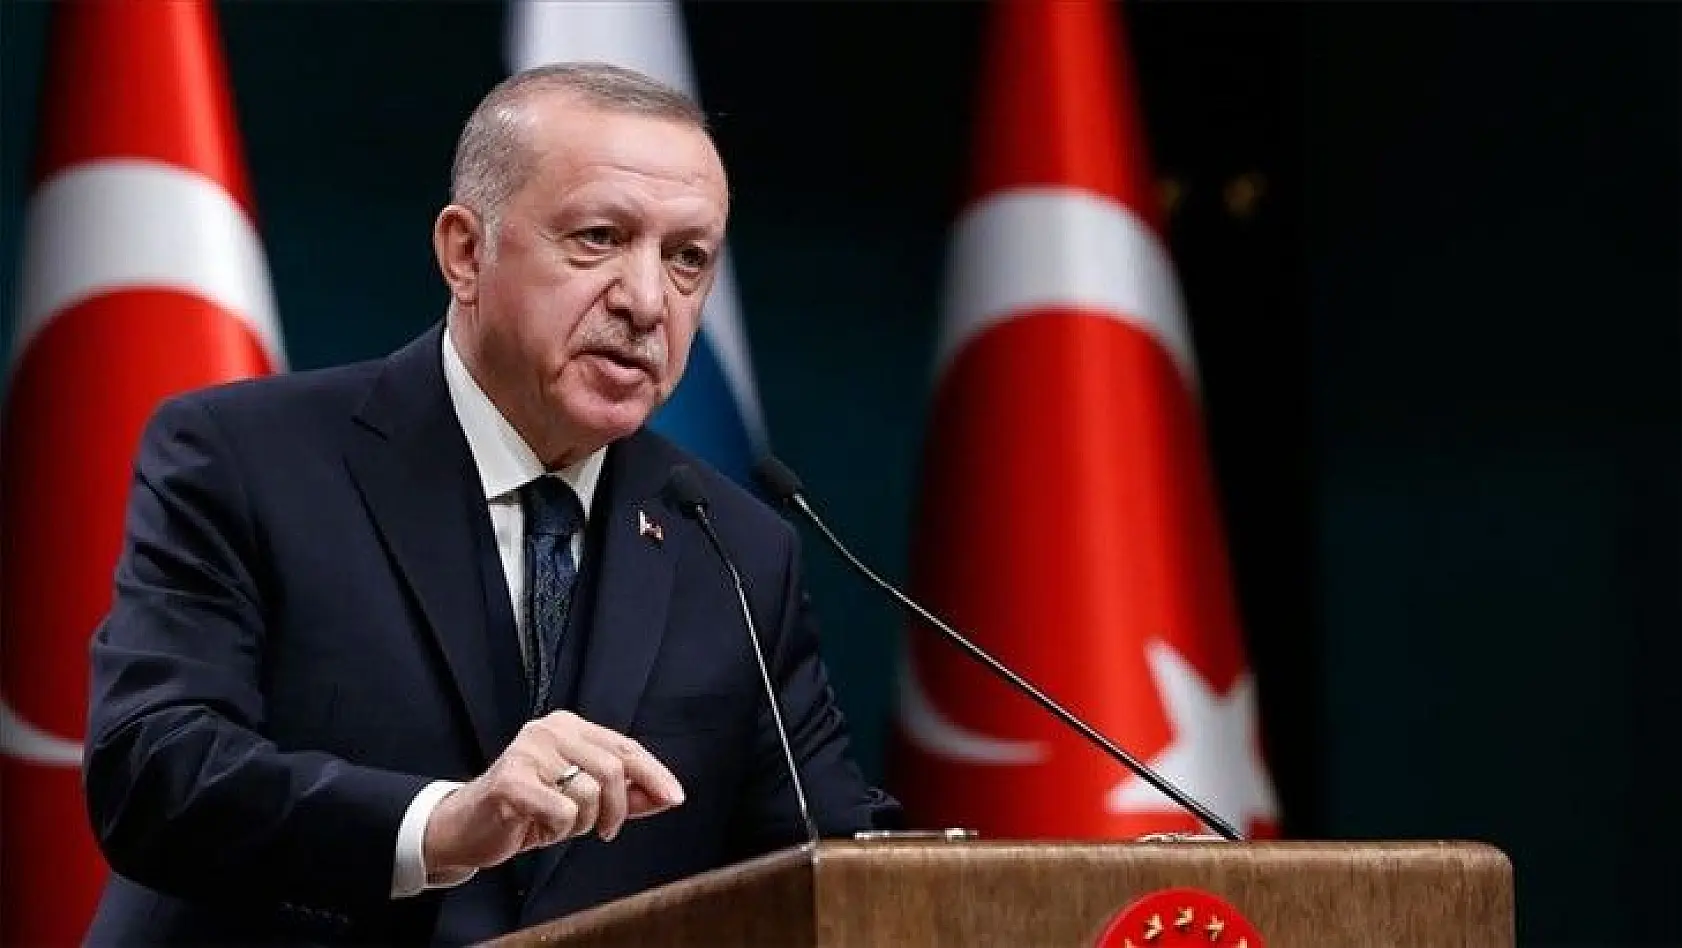 Cumhurbaşkanı Erdoğan: Pazartesi gününden itibaren kontrollü normalleşme takvimimizi uygulamaya başlıyoruz